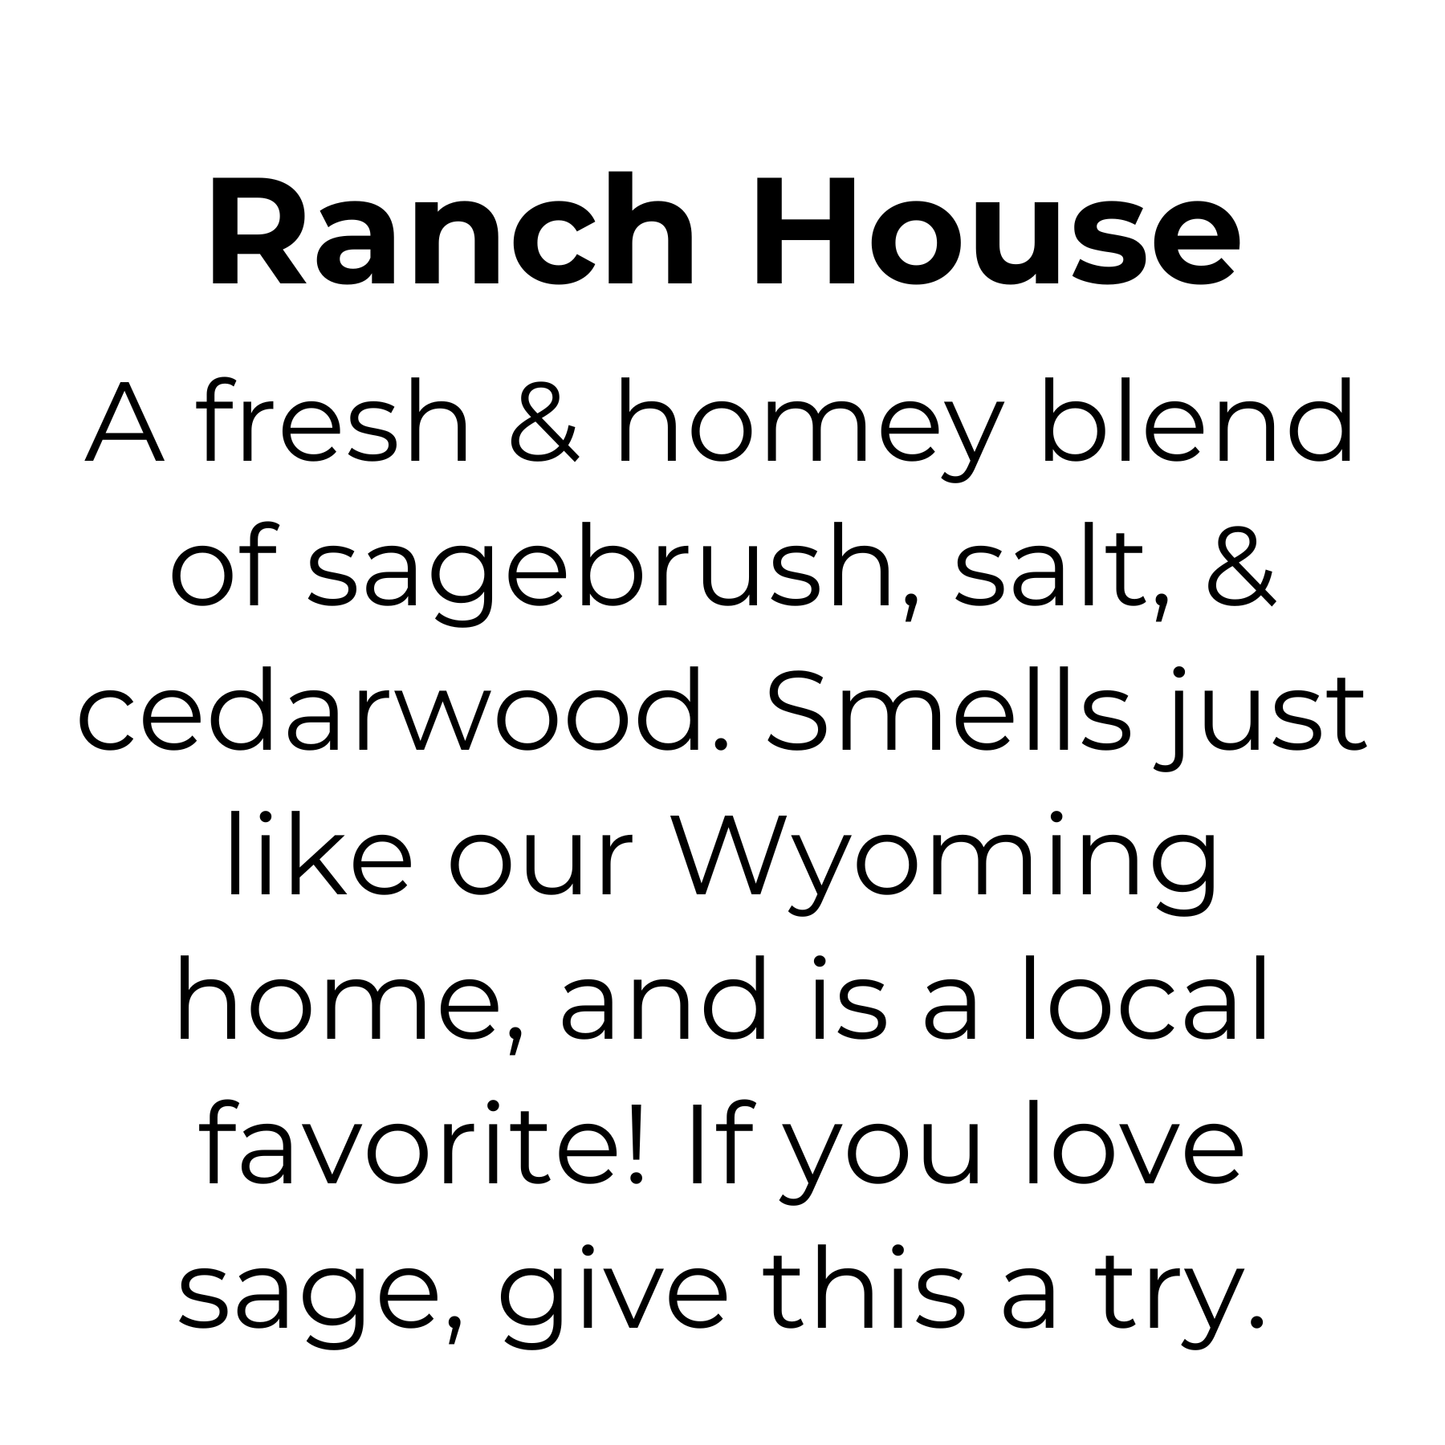 Ranch House Mason Jar Candle, 100% Natural Wax